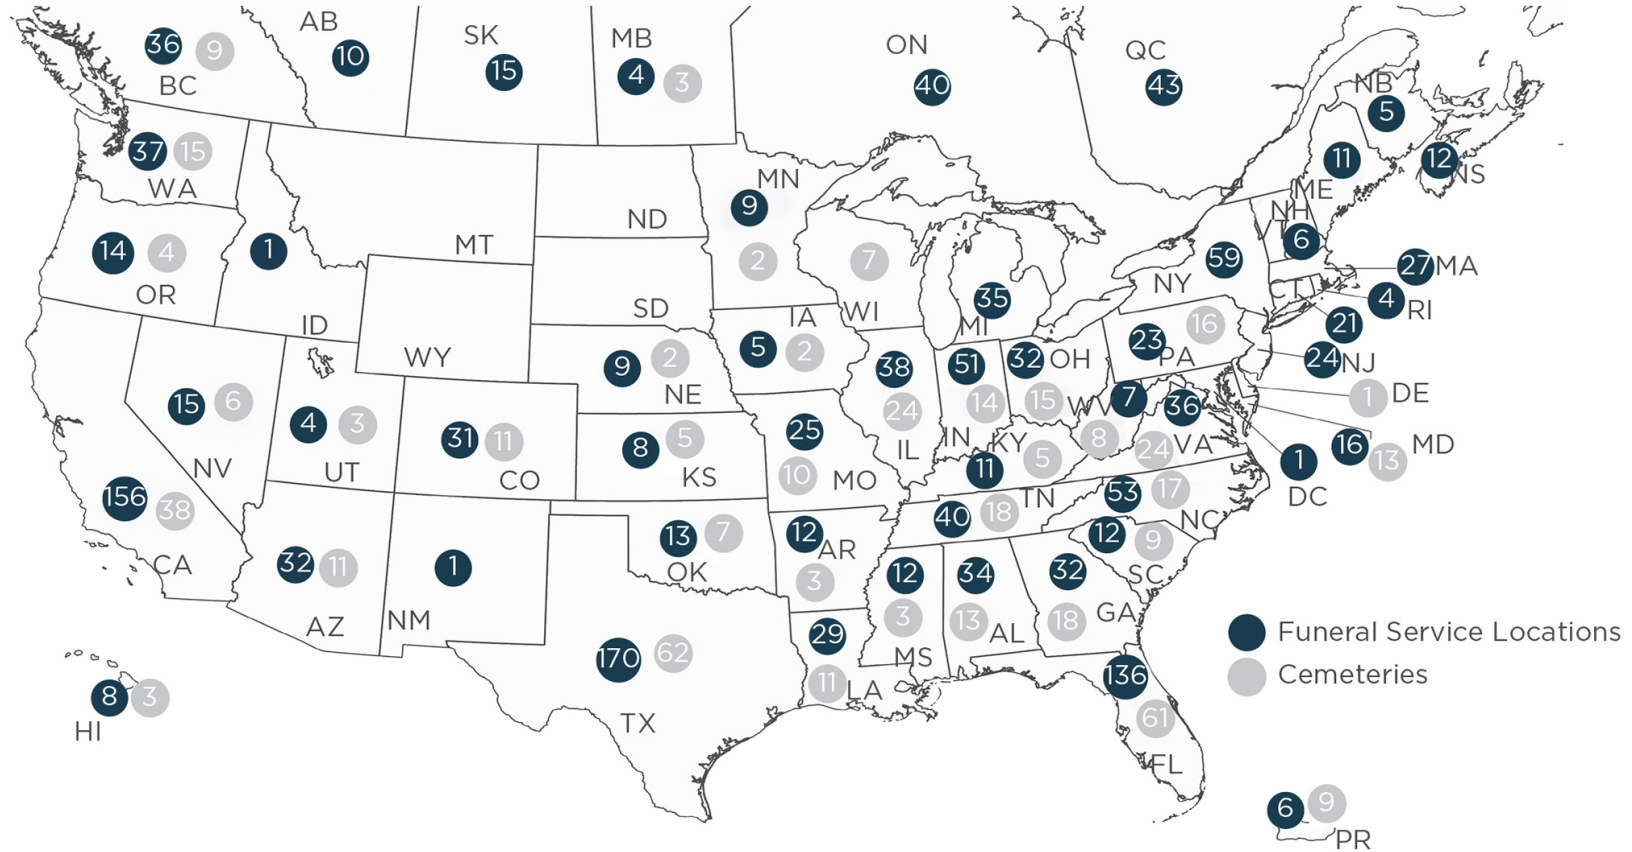 Карта владений компании в США. Синий — ритуальные службы, серый — кладбища. Источник: годовой отчет компании, стр. 8